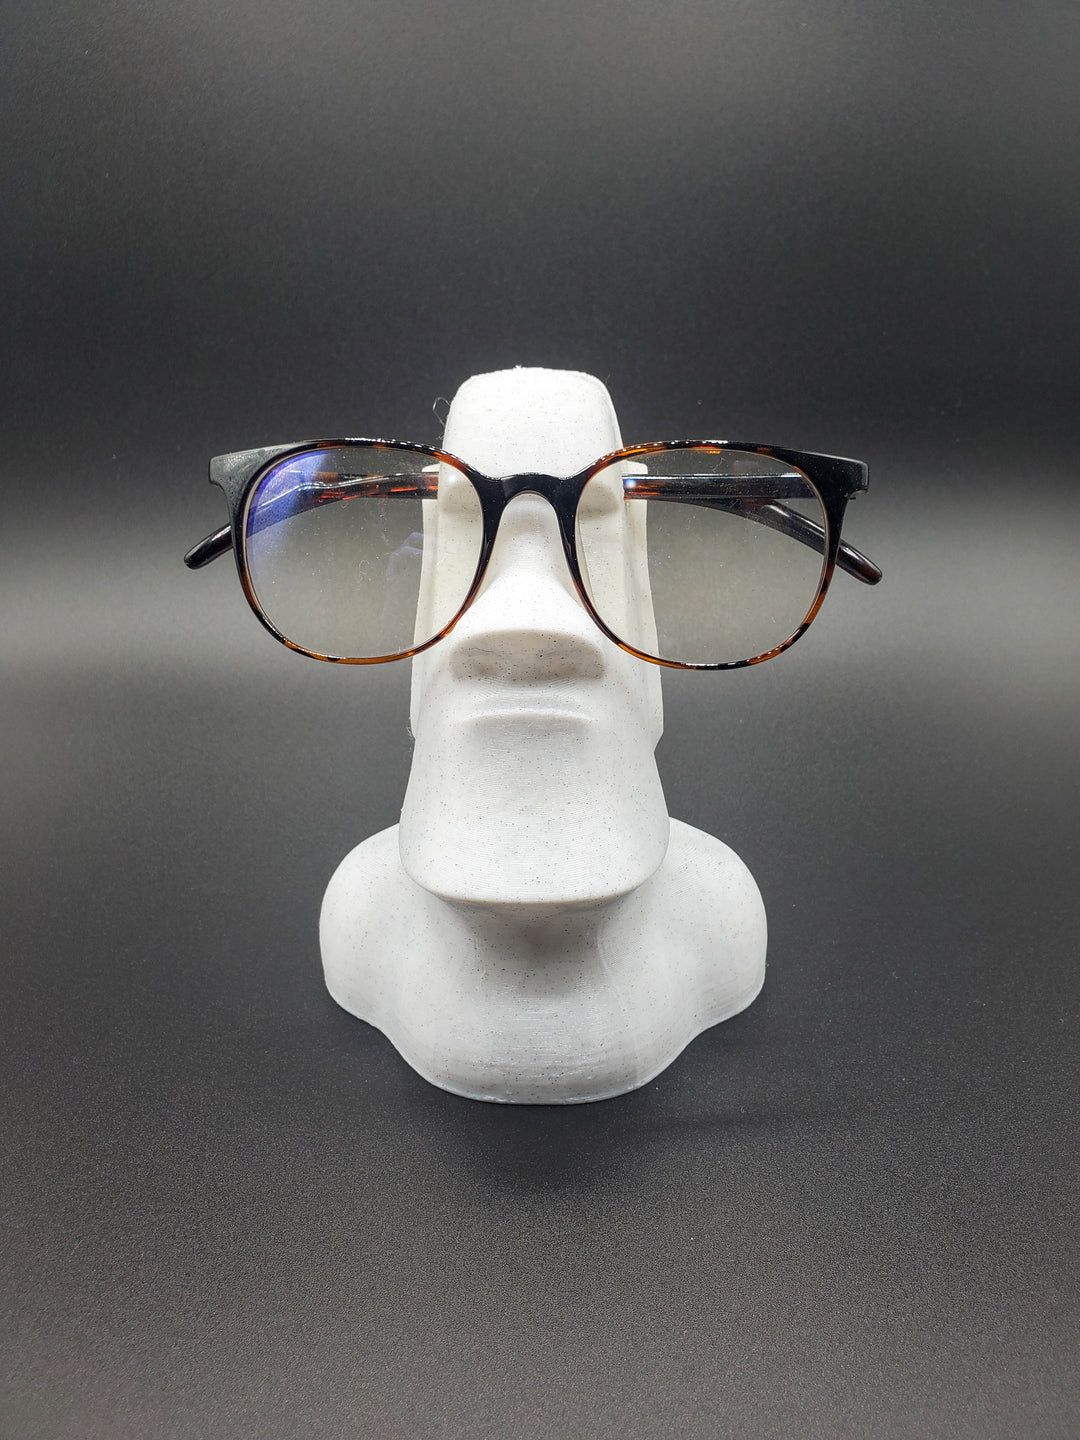 Moai Glasses Holder